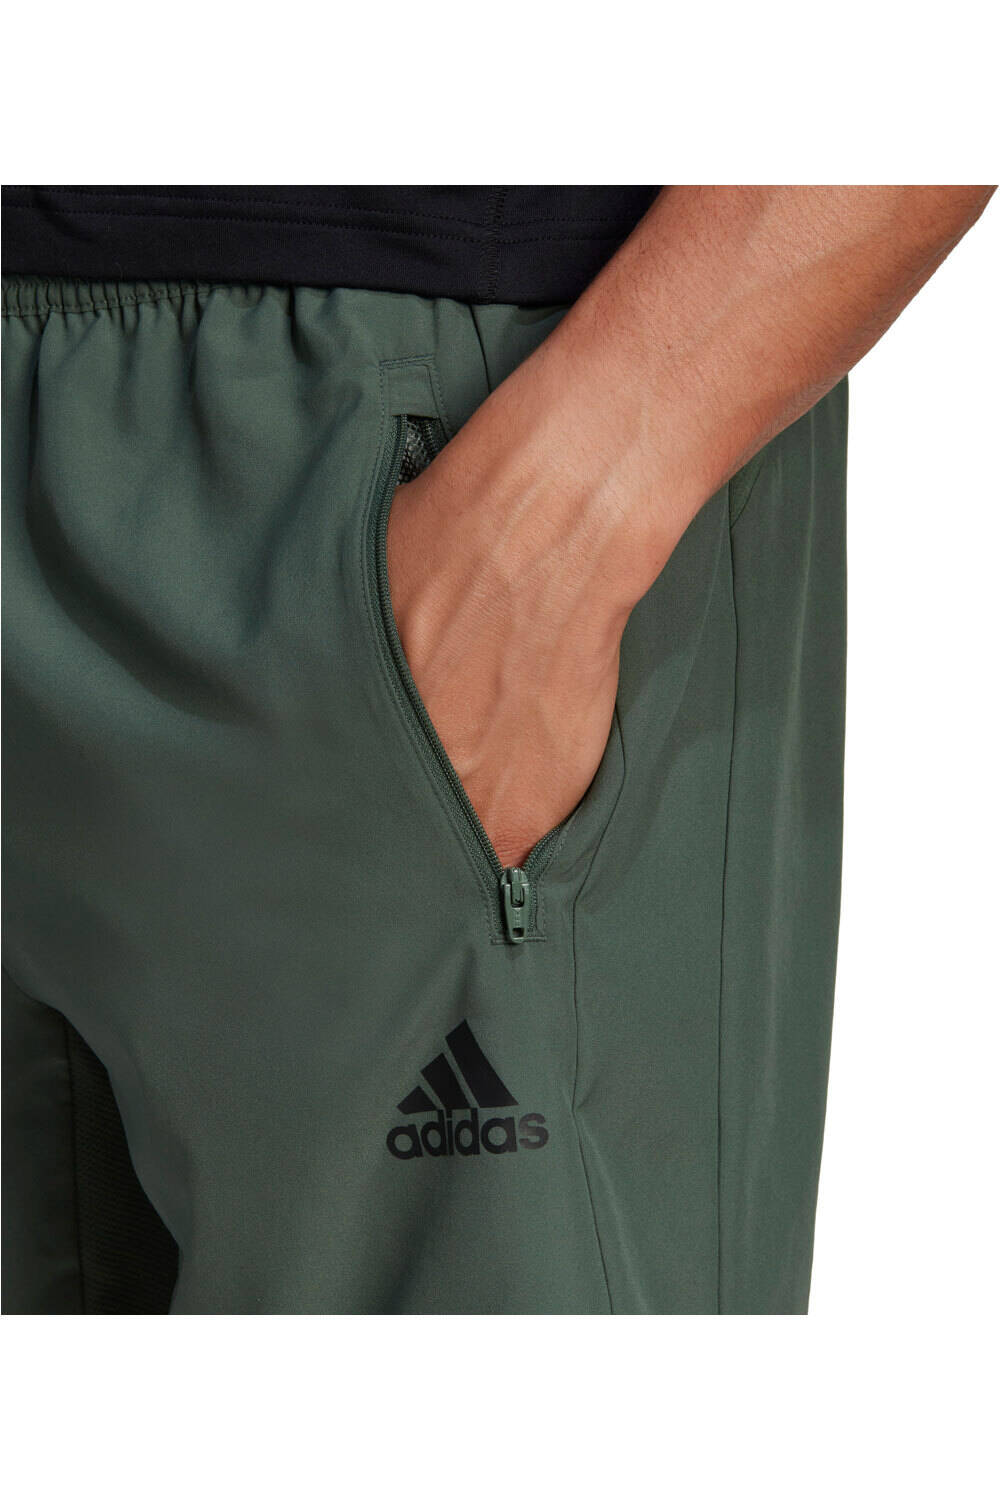 adidas pantalón corto fitness hombre AEROREADY Designed 2 Move Woven Sport vista detalle